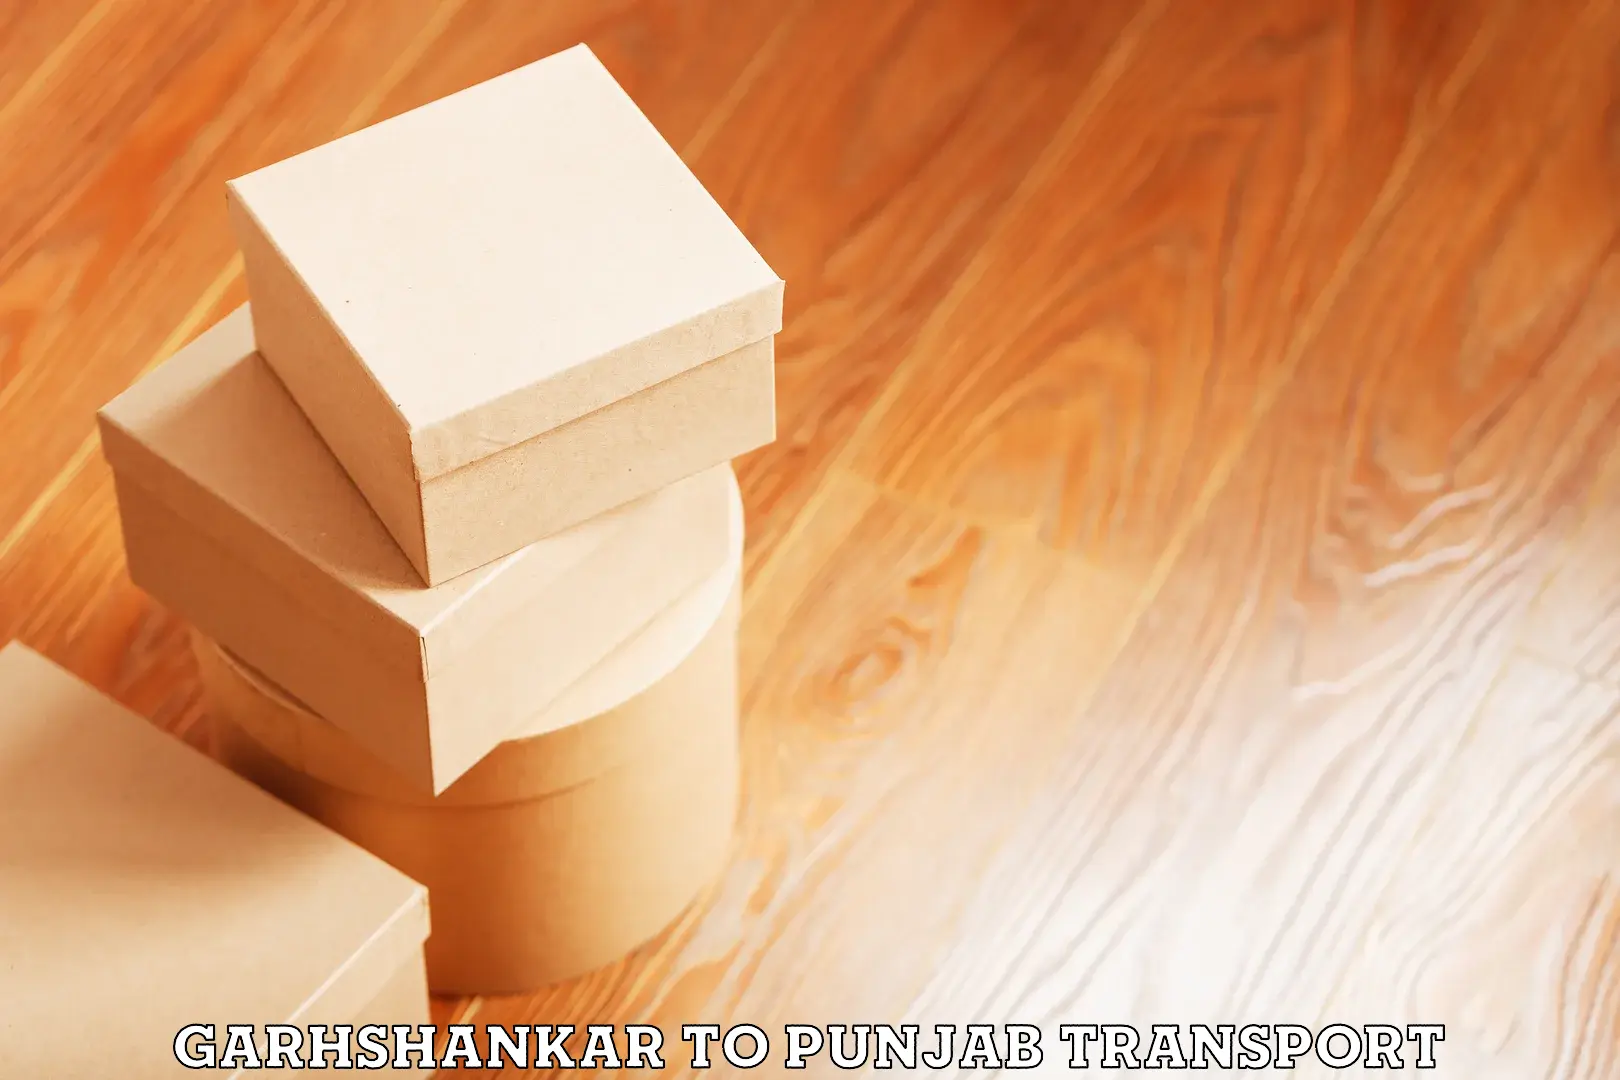 Furniture transport service Garhshankar to Punjab